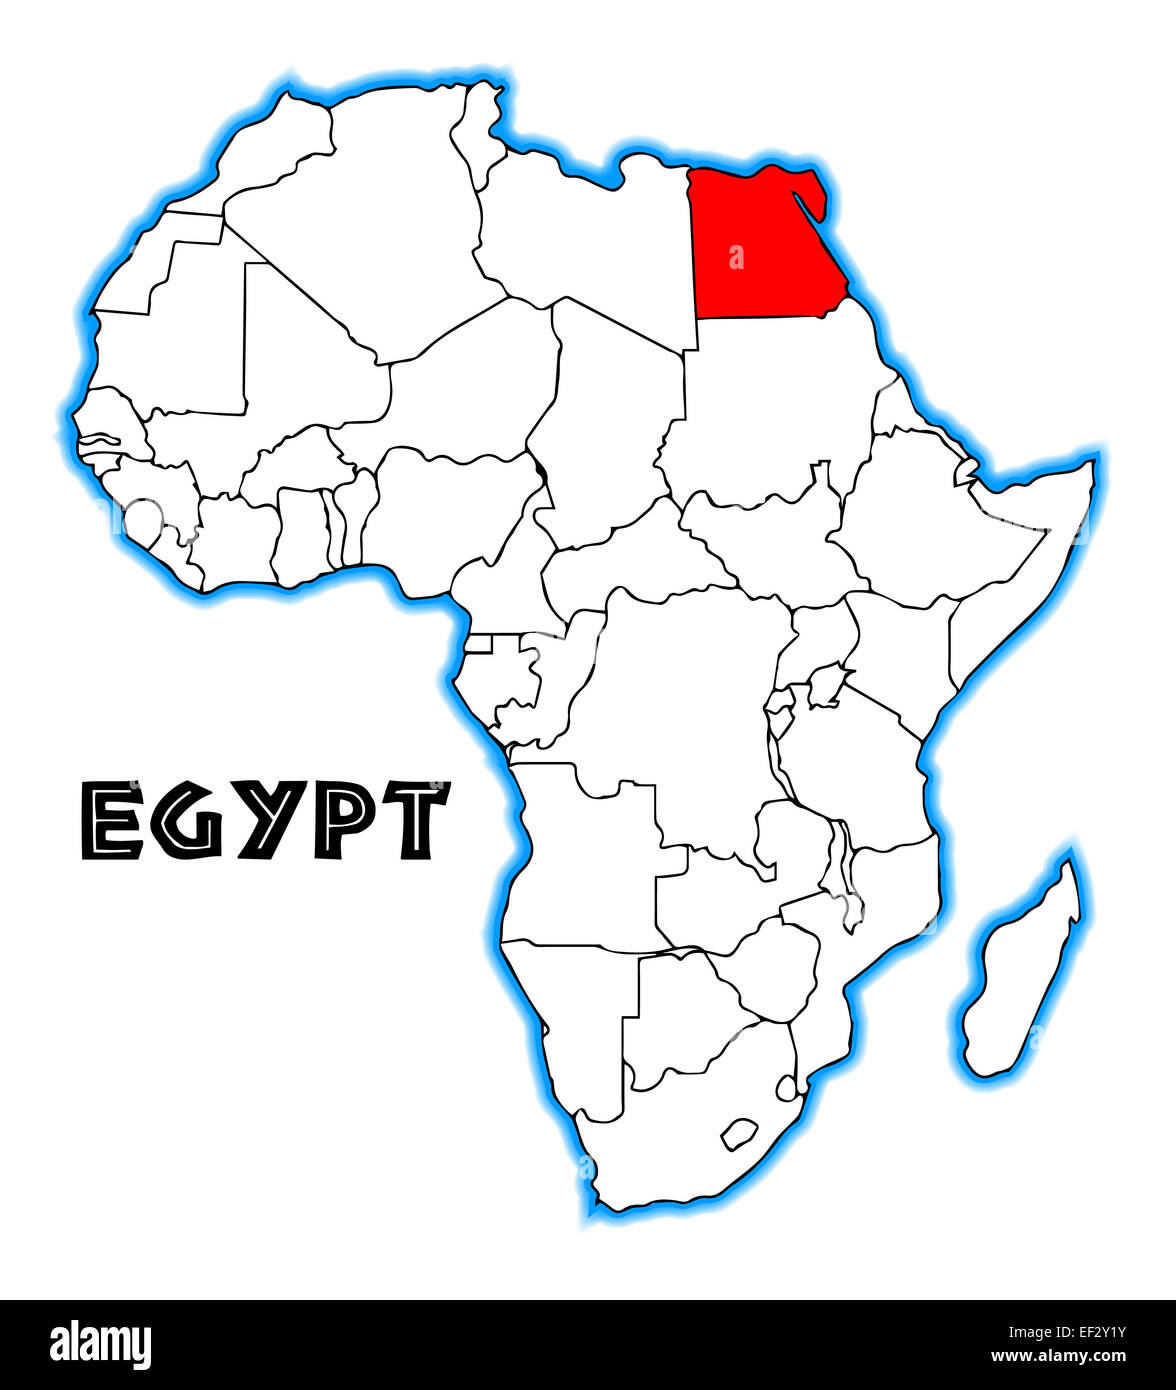 egypte carte afrique